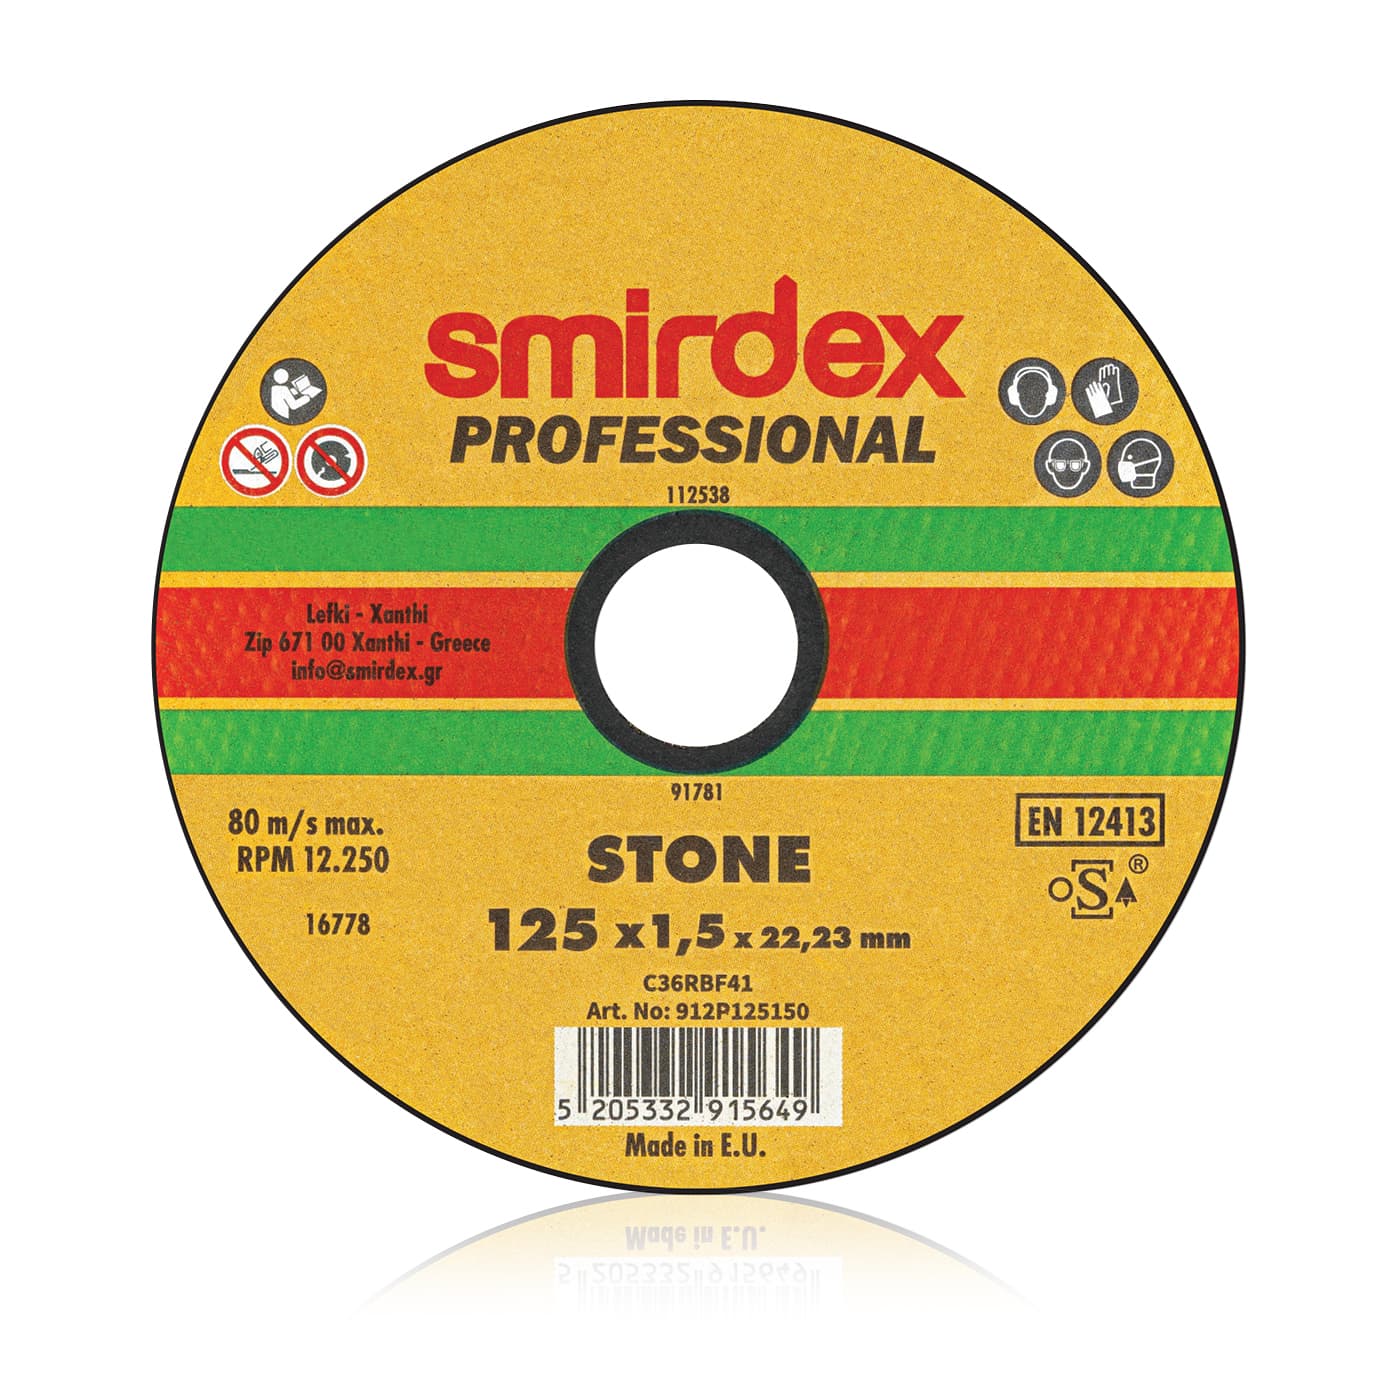 Smirdex professional marble cutting wheel 125x1.5x22.23